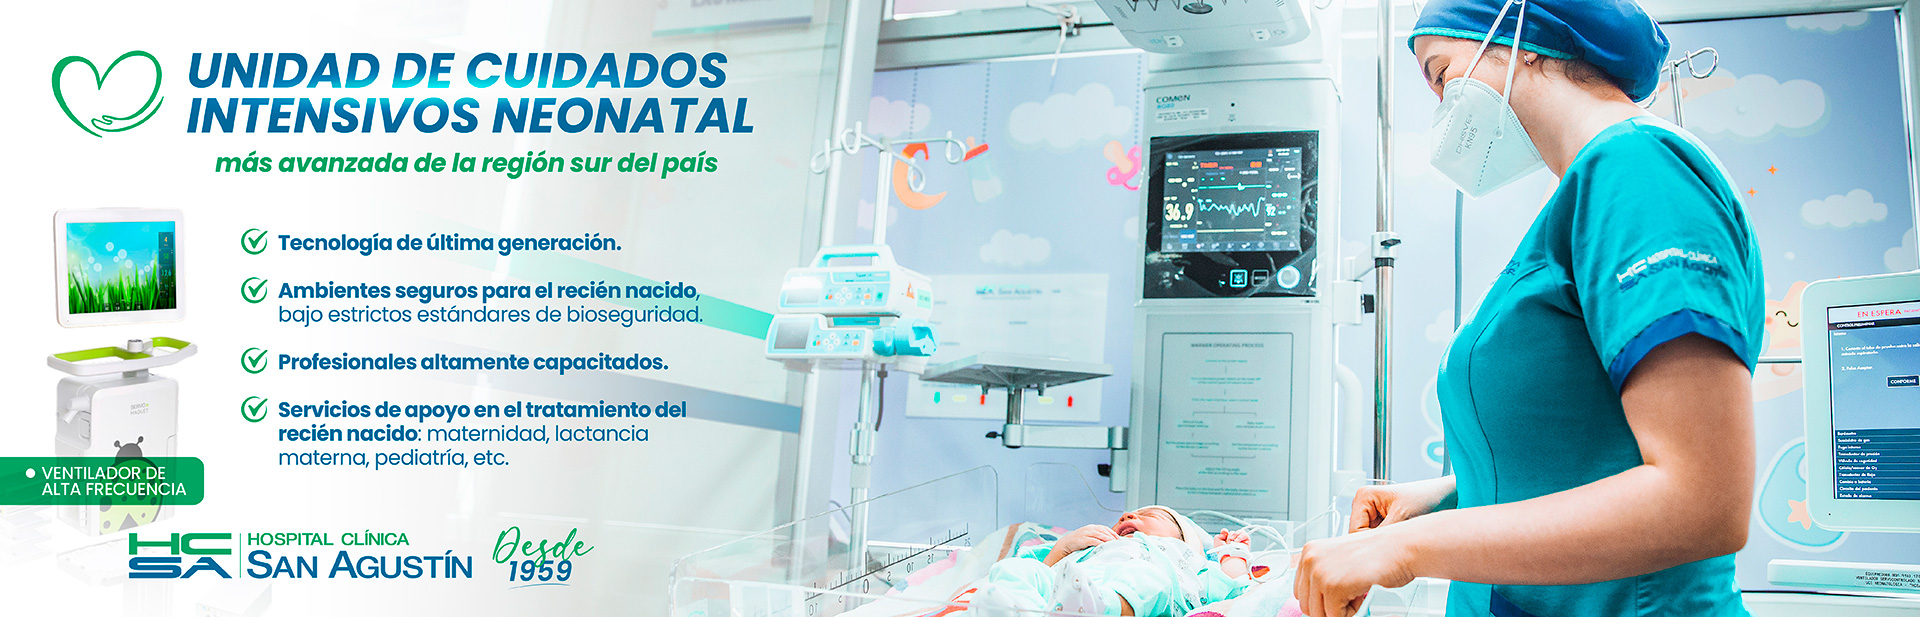 Unidad de Cuidados Intensivos Neonatal | Hospital Clínica San Agustín